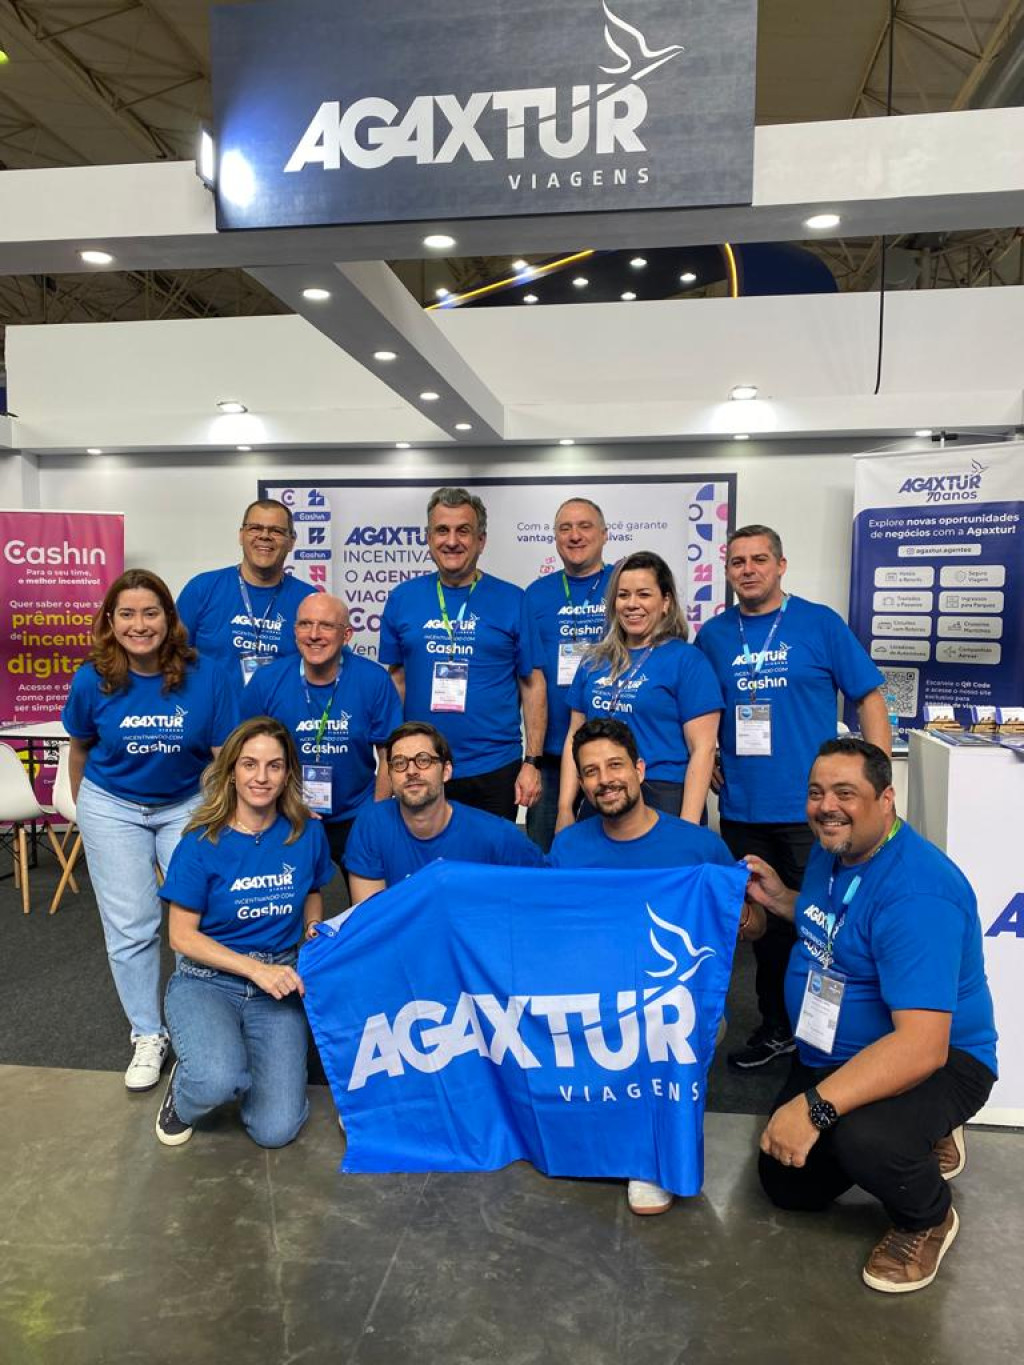 Agaxtur realiza campanhas de incentivo para agentes de viagem com Cashin